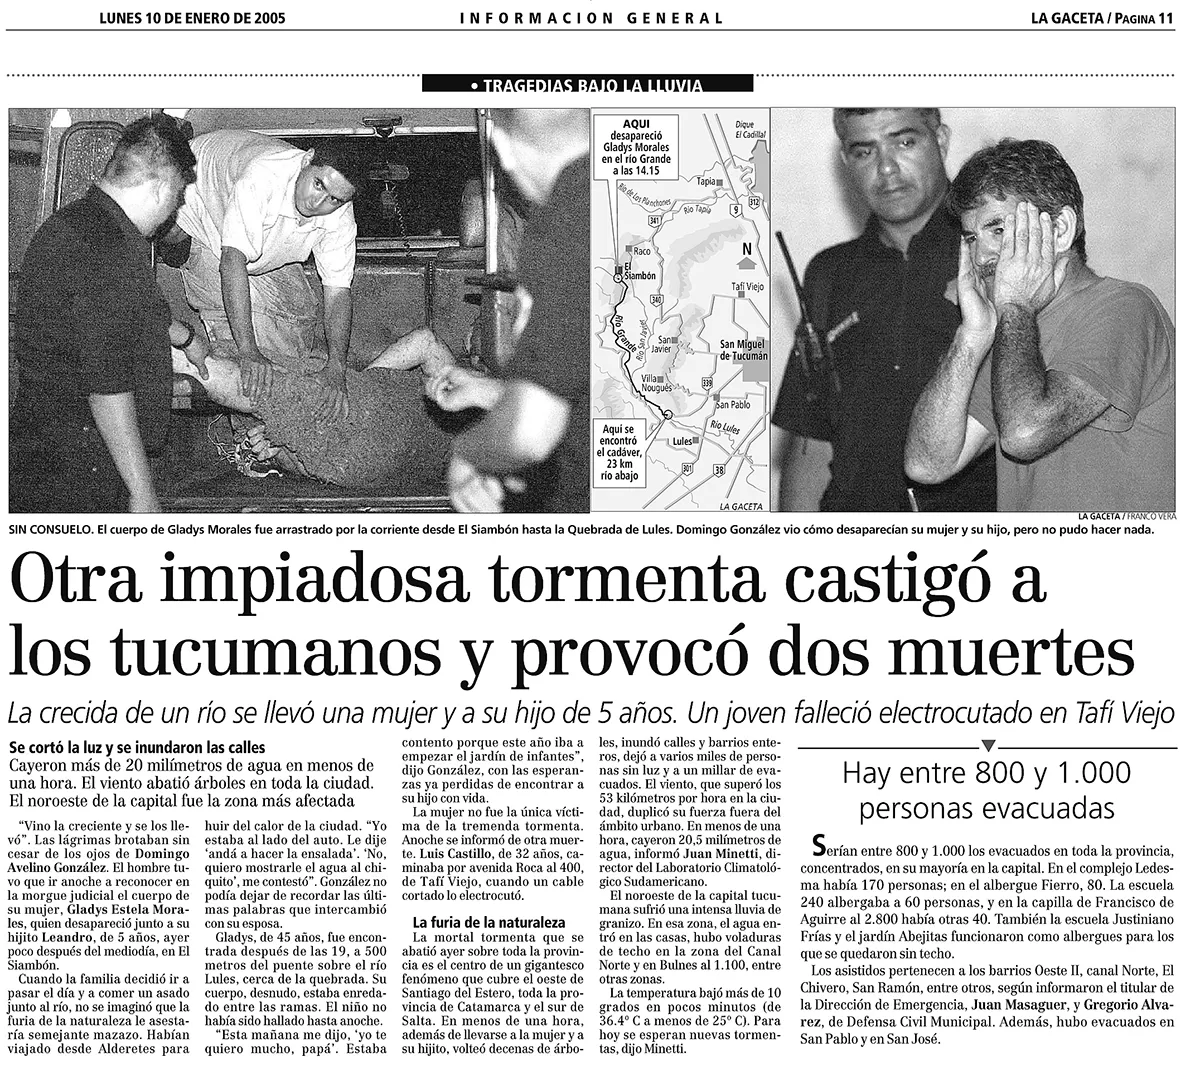 LO FATAL, EN LA GACETA DEL 10/01. Domingo González perdió ese día a su hijo, Leandro, y a su mujer, Gladys. 